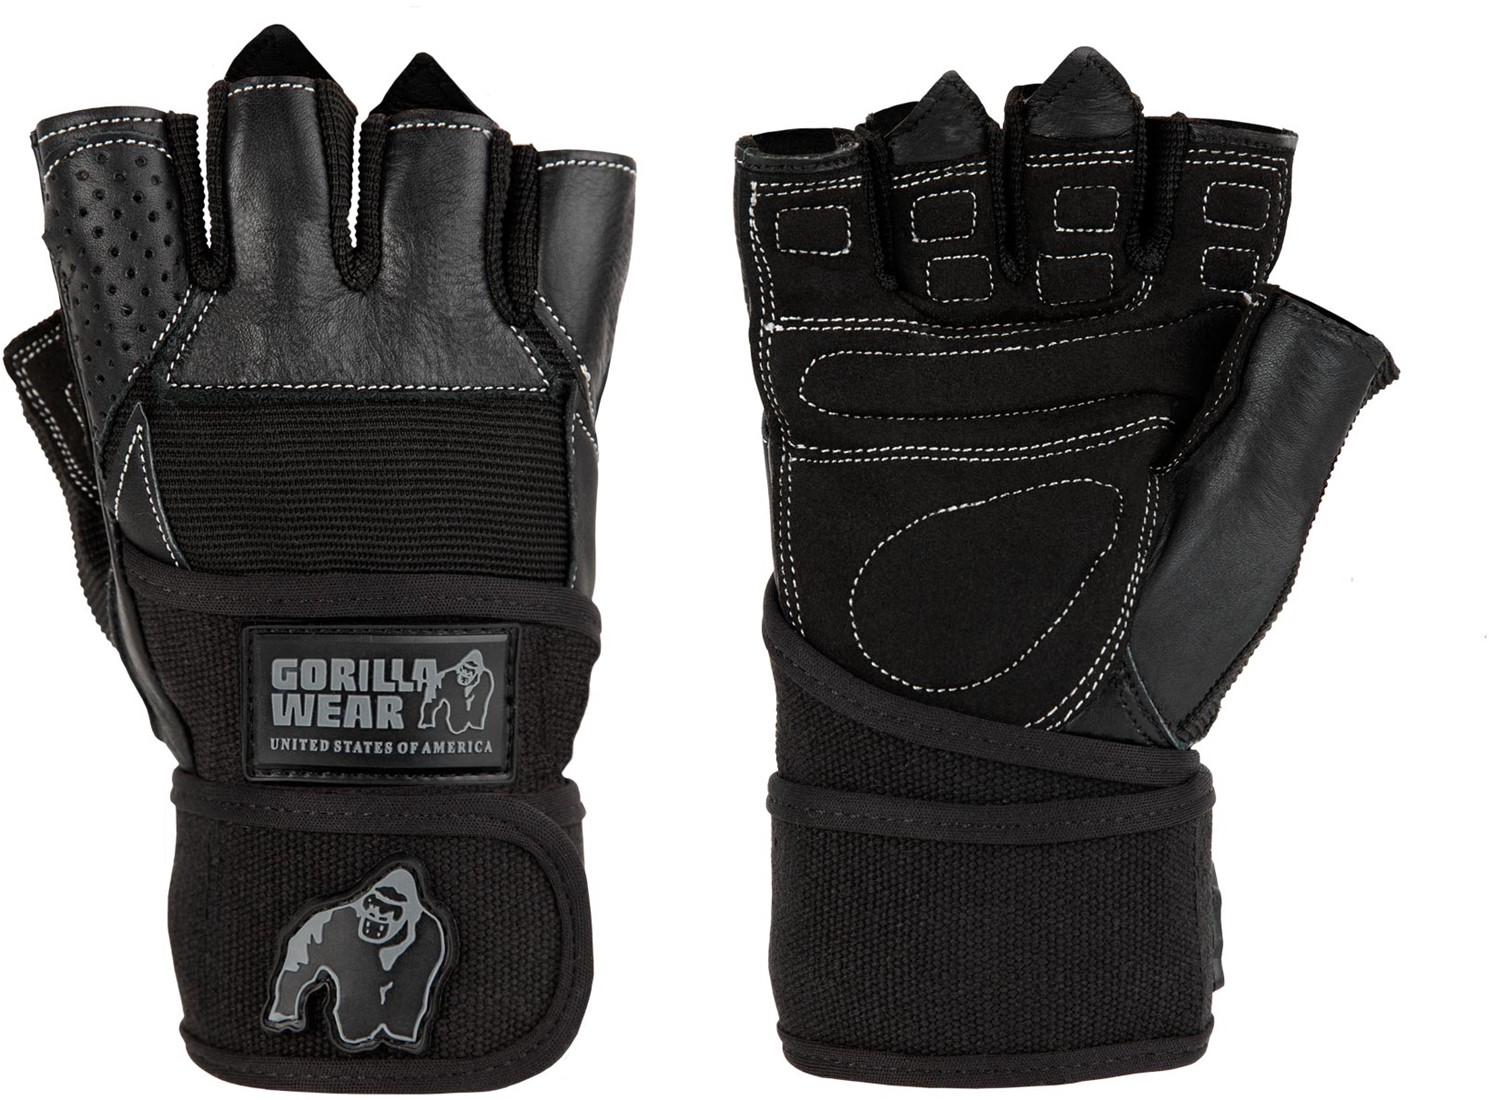 Gorilla Wear Dallas Wrist Wrap Handschoenen - Fitness Handschoenen - Zwart - S